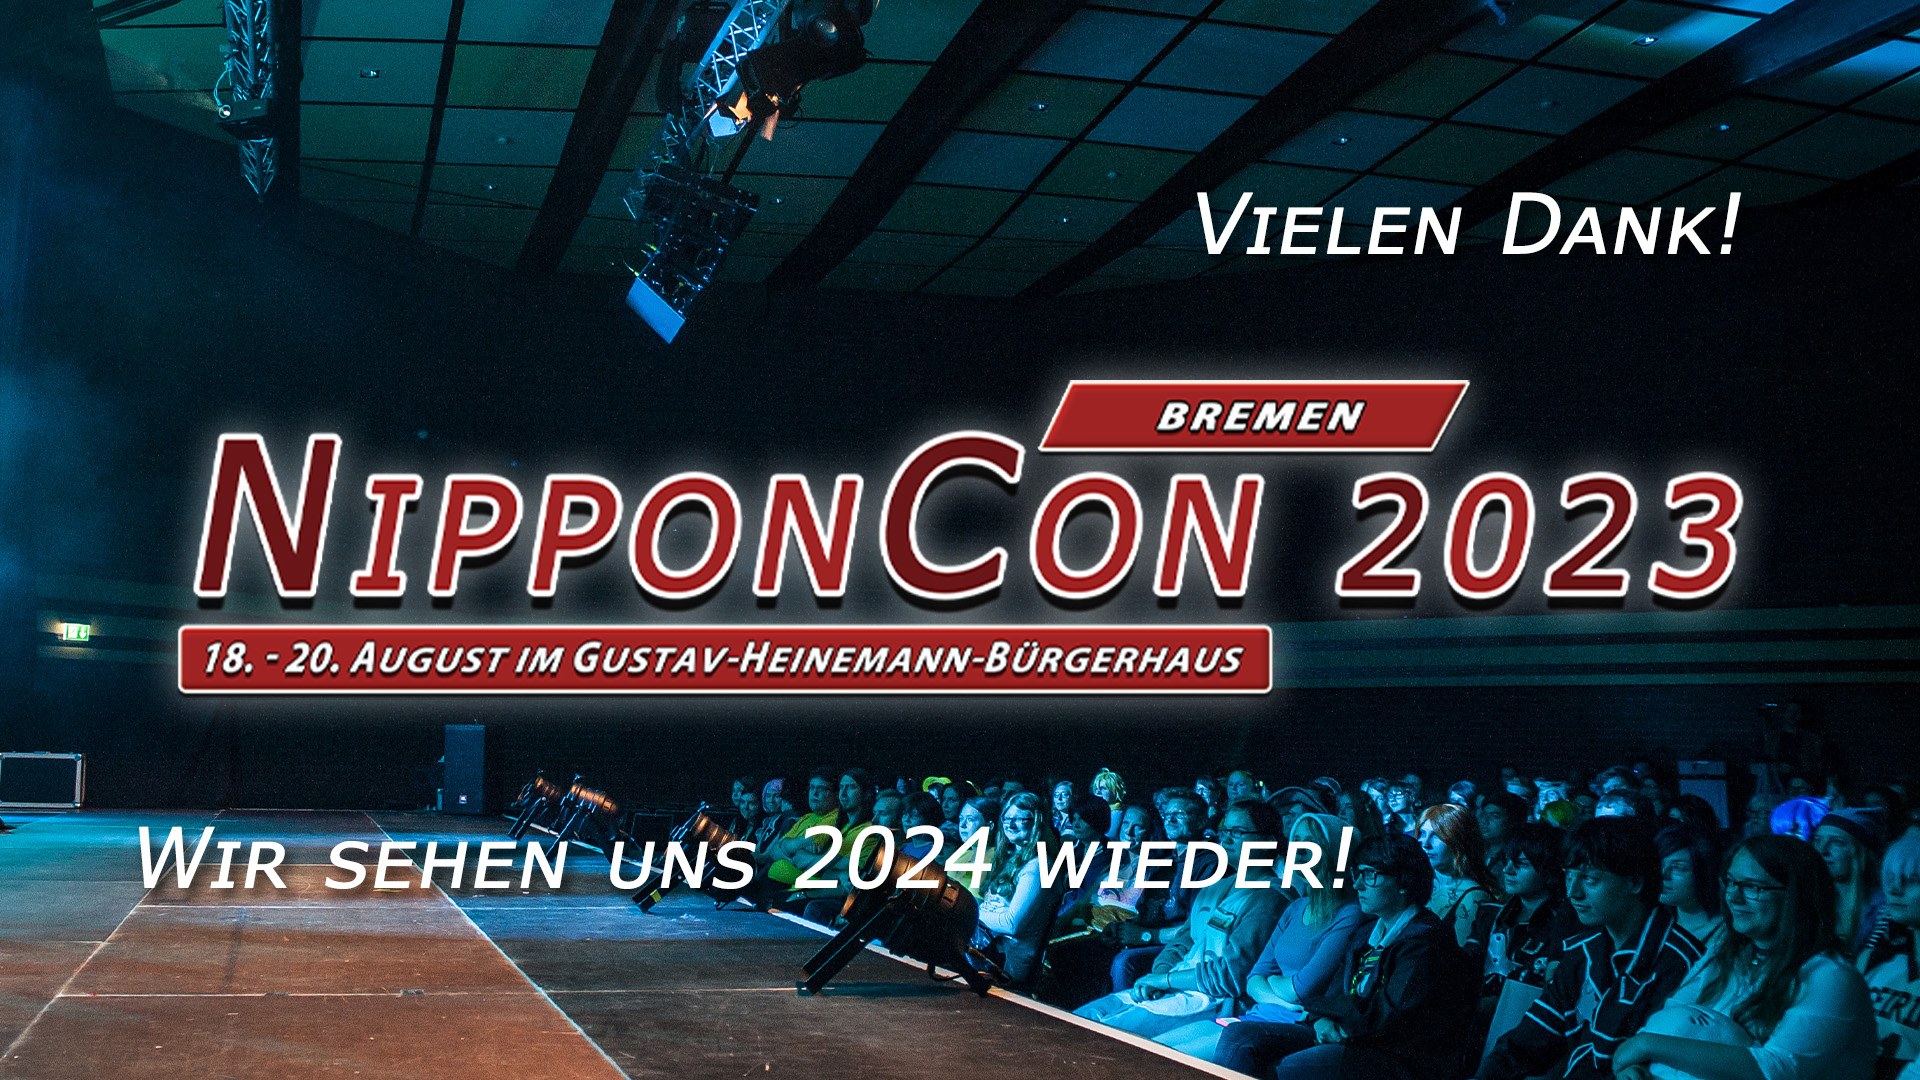 Vielen Dank! NipponCon 2023 Bremen. 18. - 20. August im Gustav-Heinemann-Bürgerhaus. Wir sehen uns 2024 wieder!